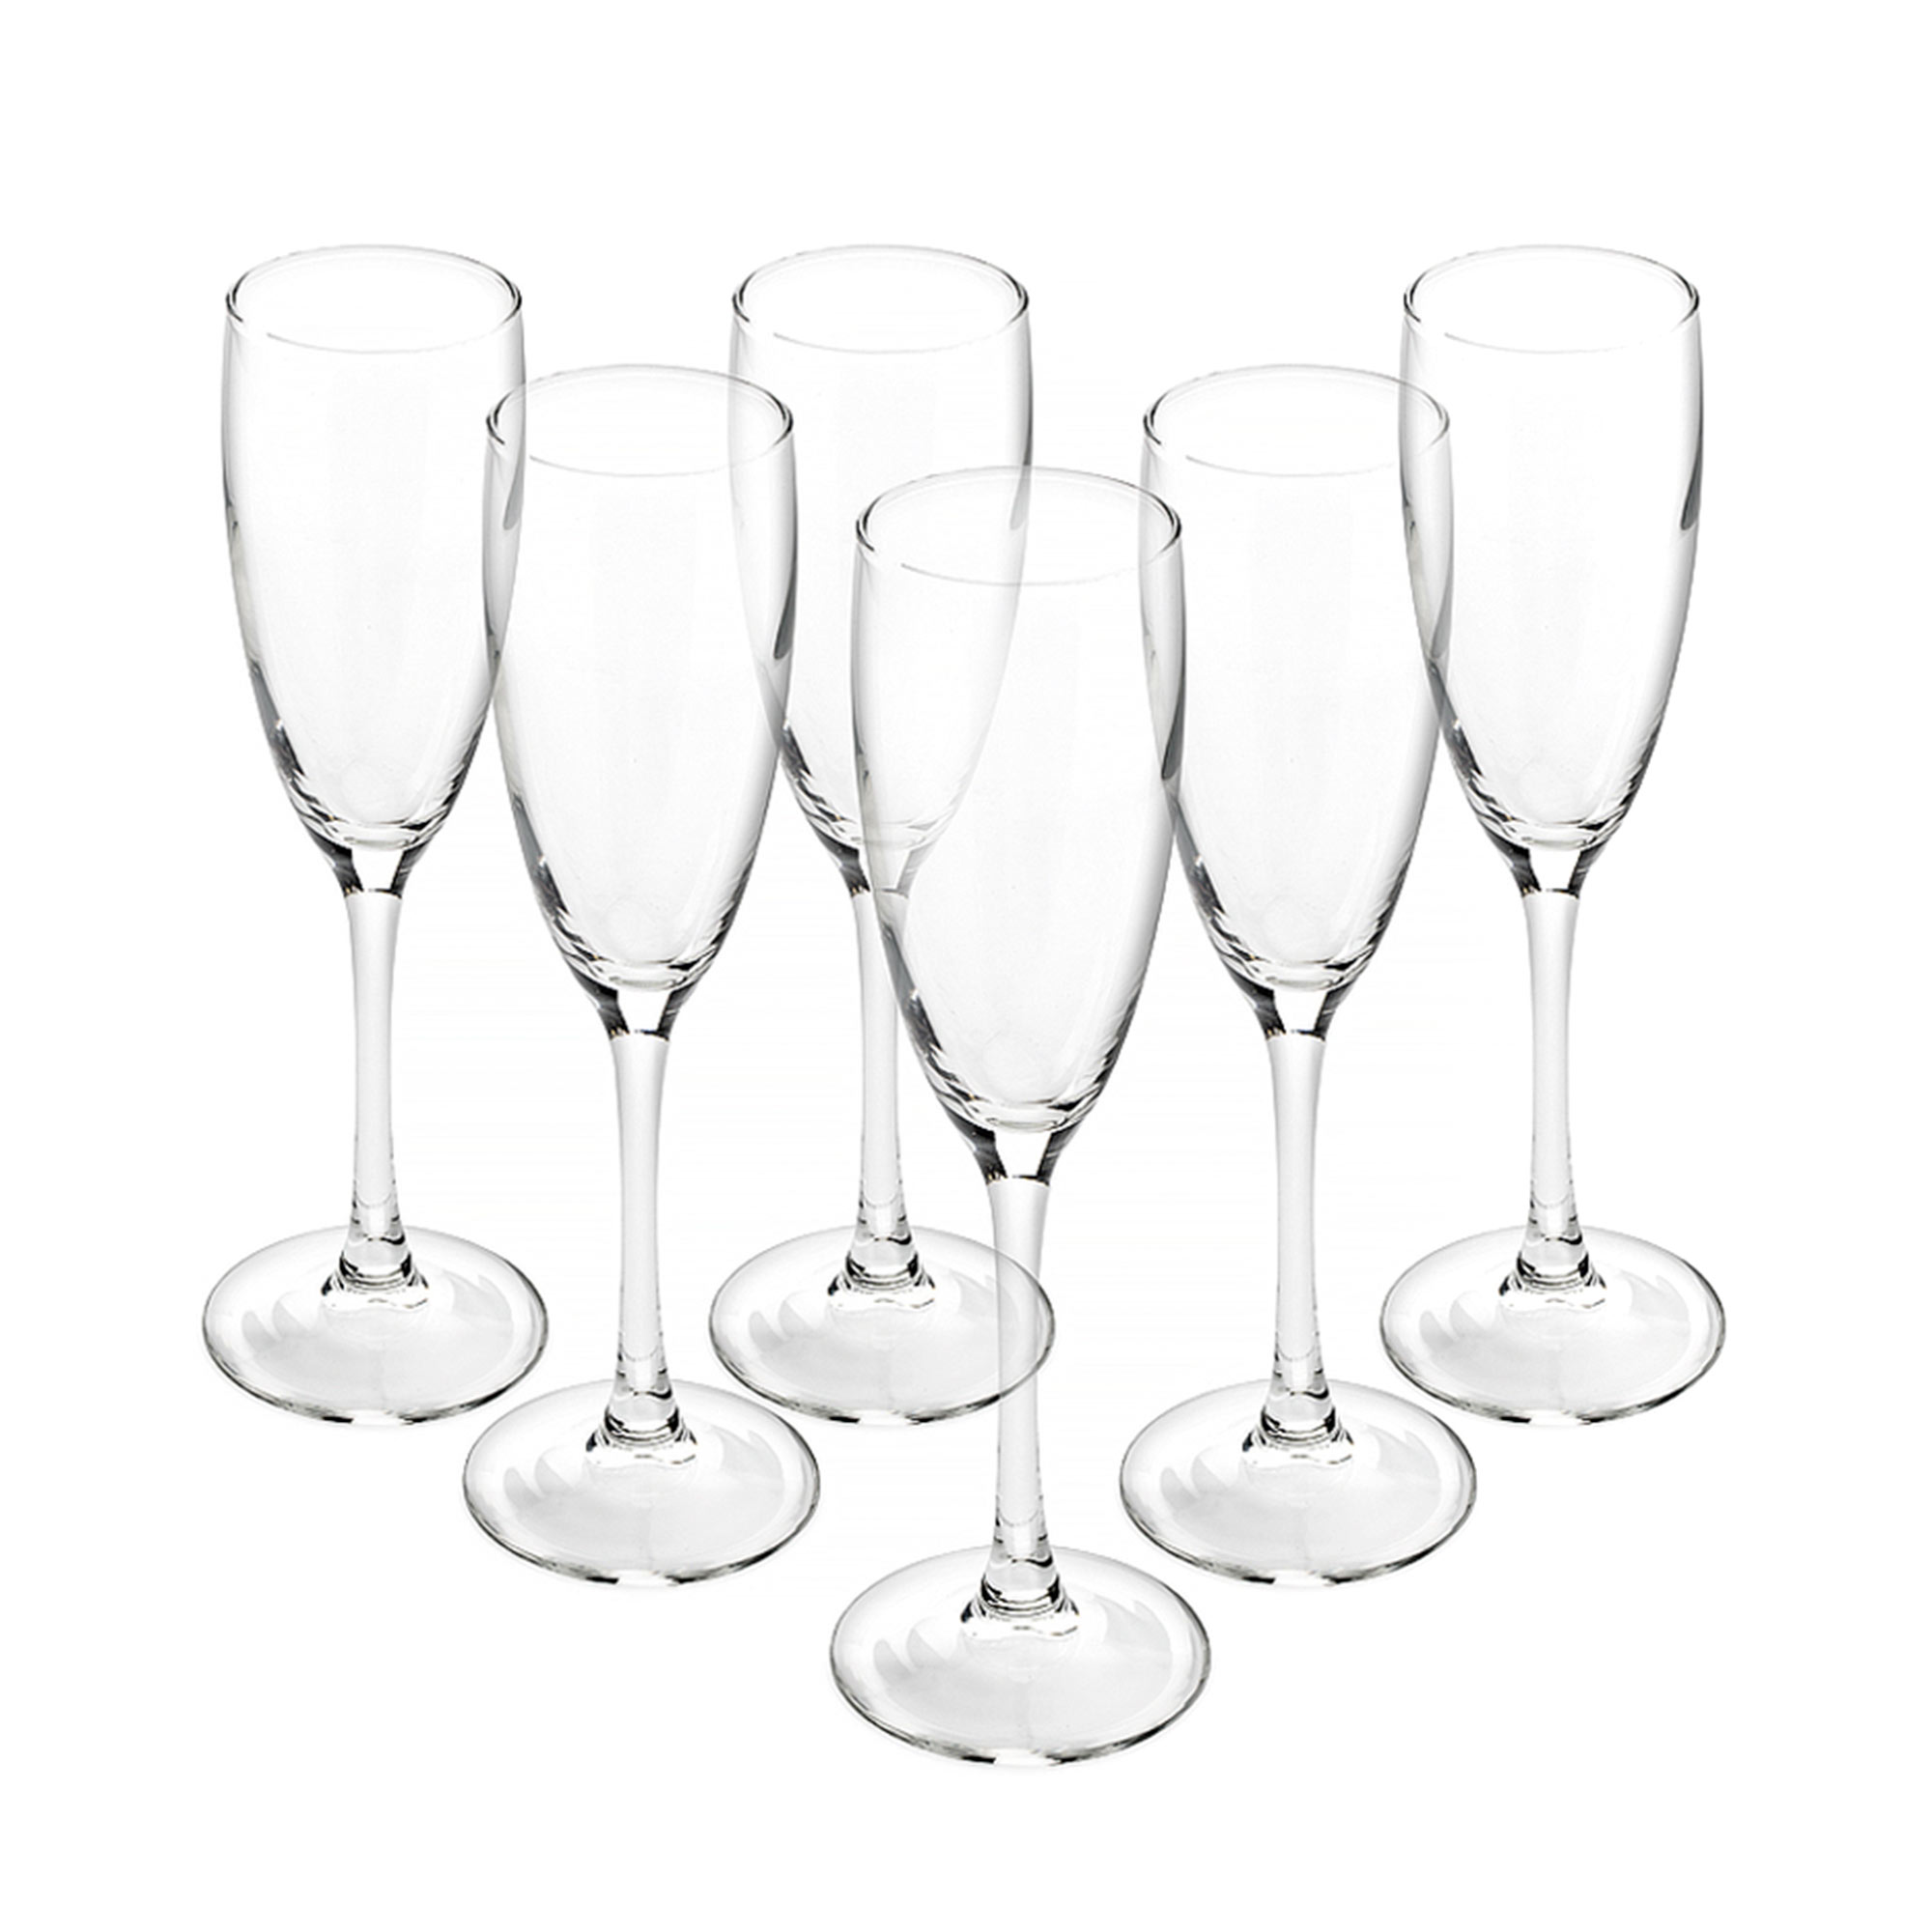 Набор бокалов для шампанского Luminarc Signature/Эталон 170 мл 6 шт коробка жестная в форме бутылки шампанского